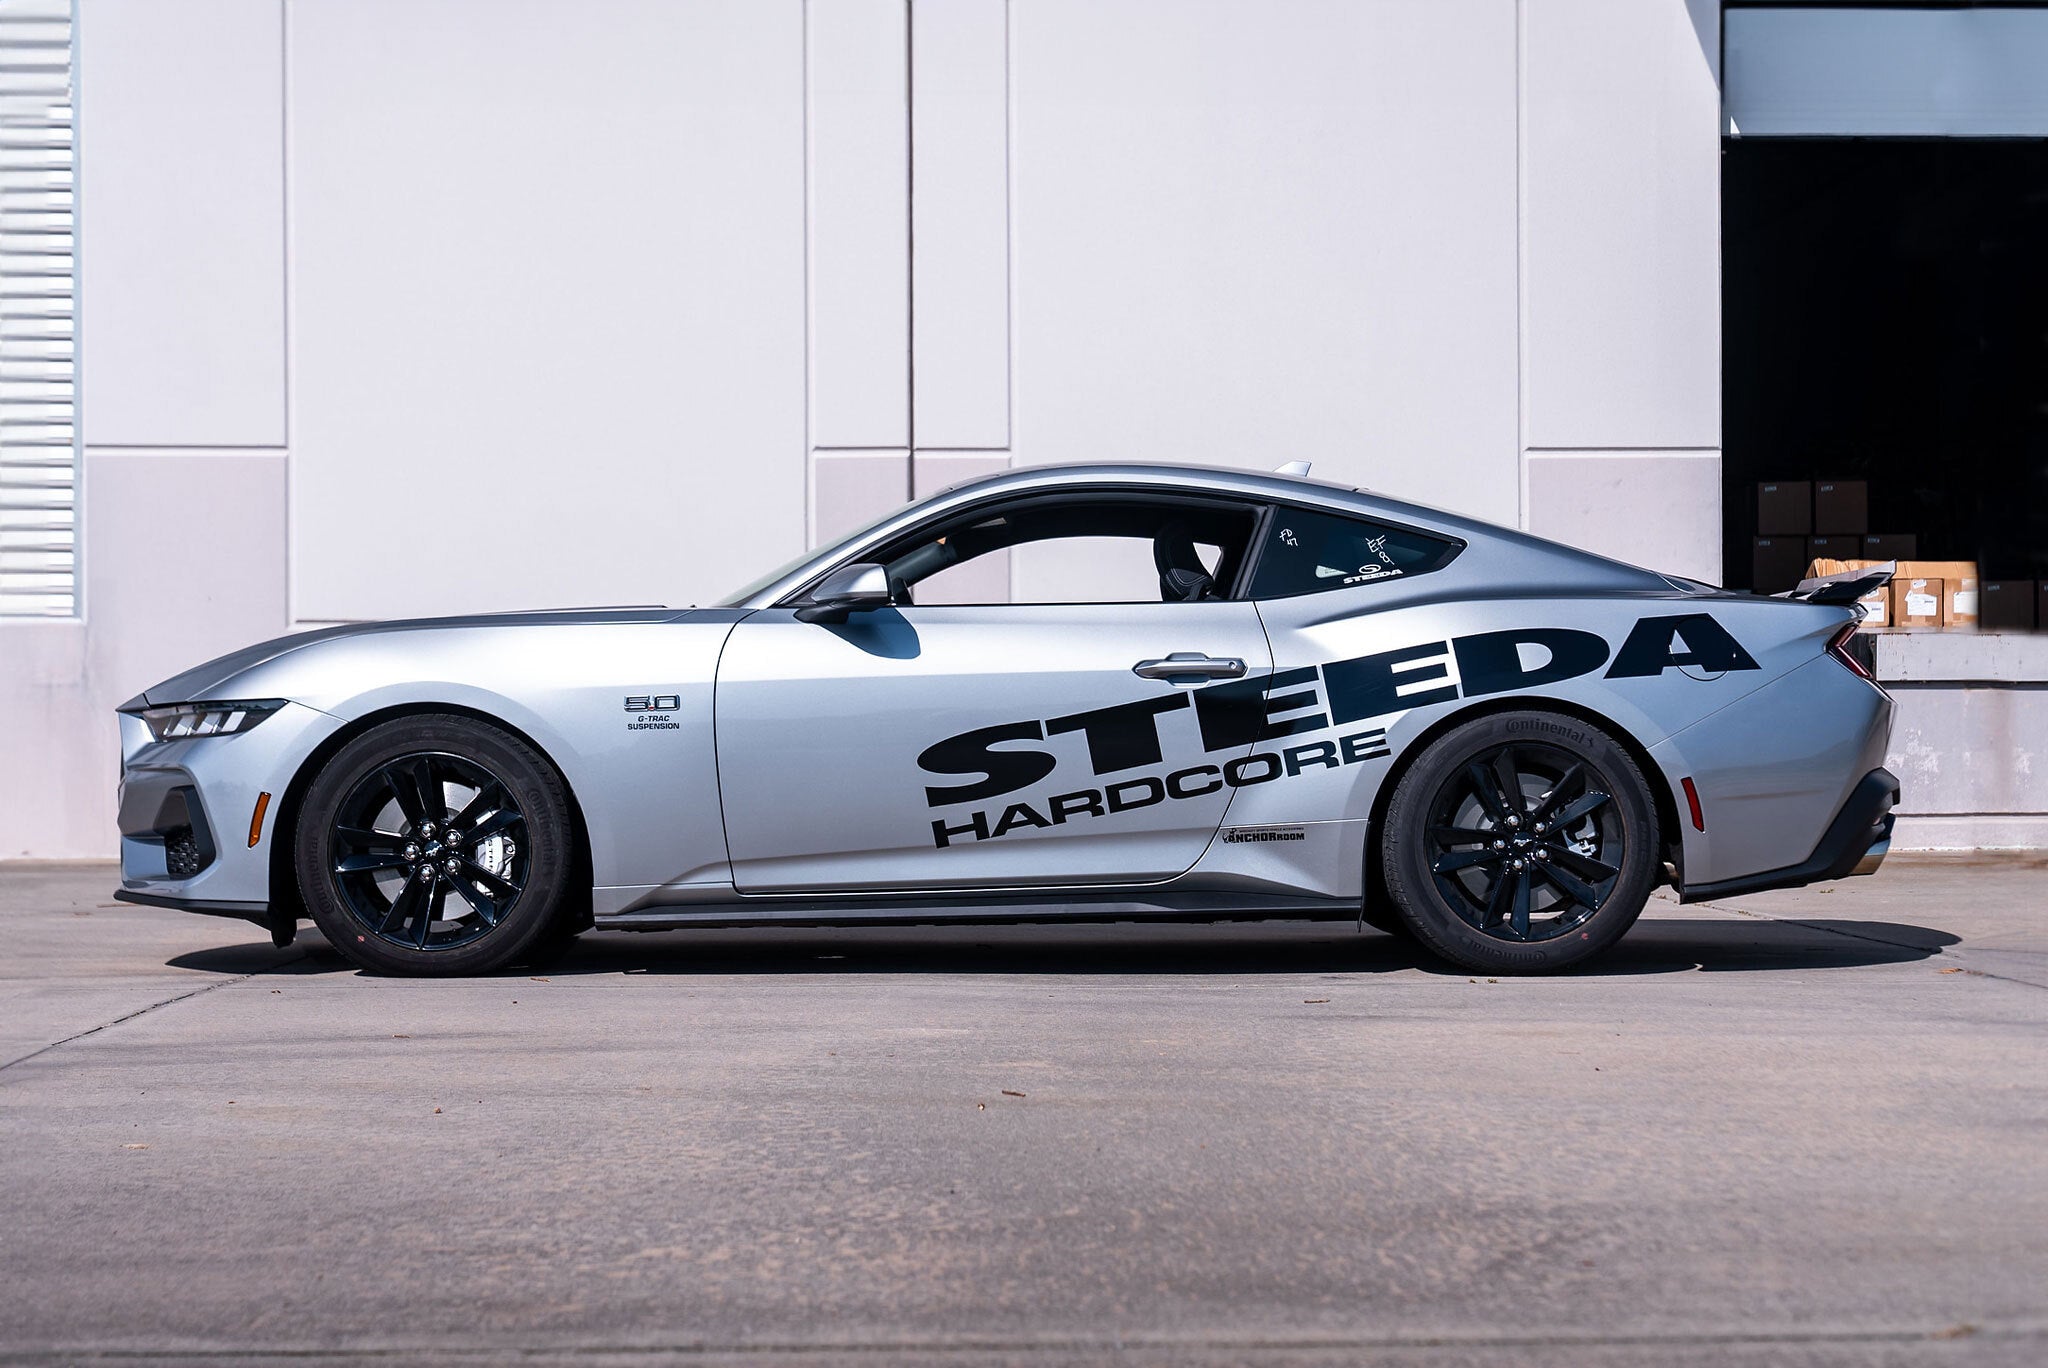 ¡Steeda comienza el desarrollo del Mustang de nueva generación S650 con Silver Bullet V 2.0!